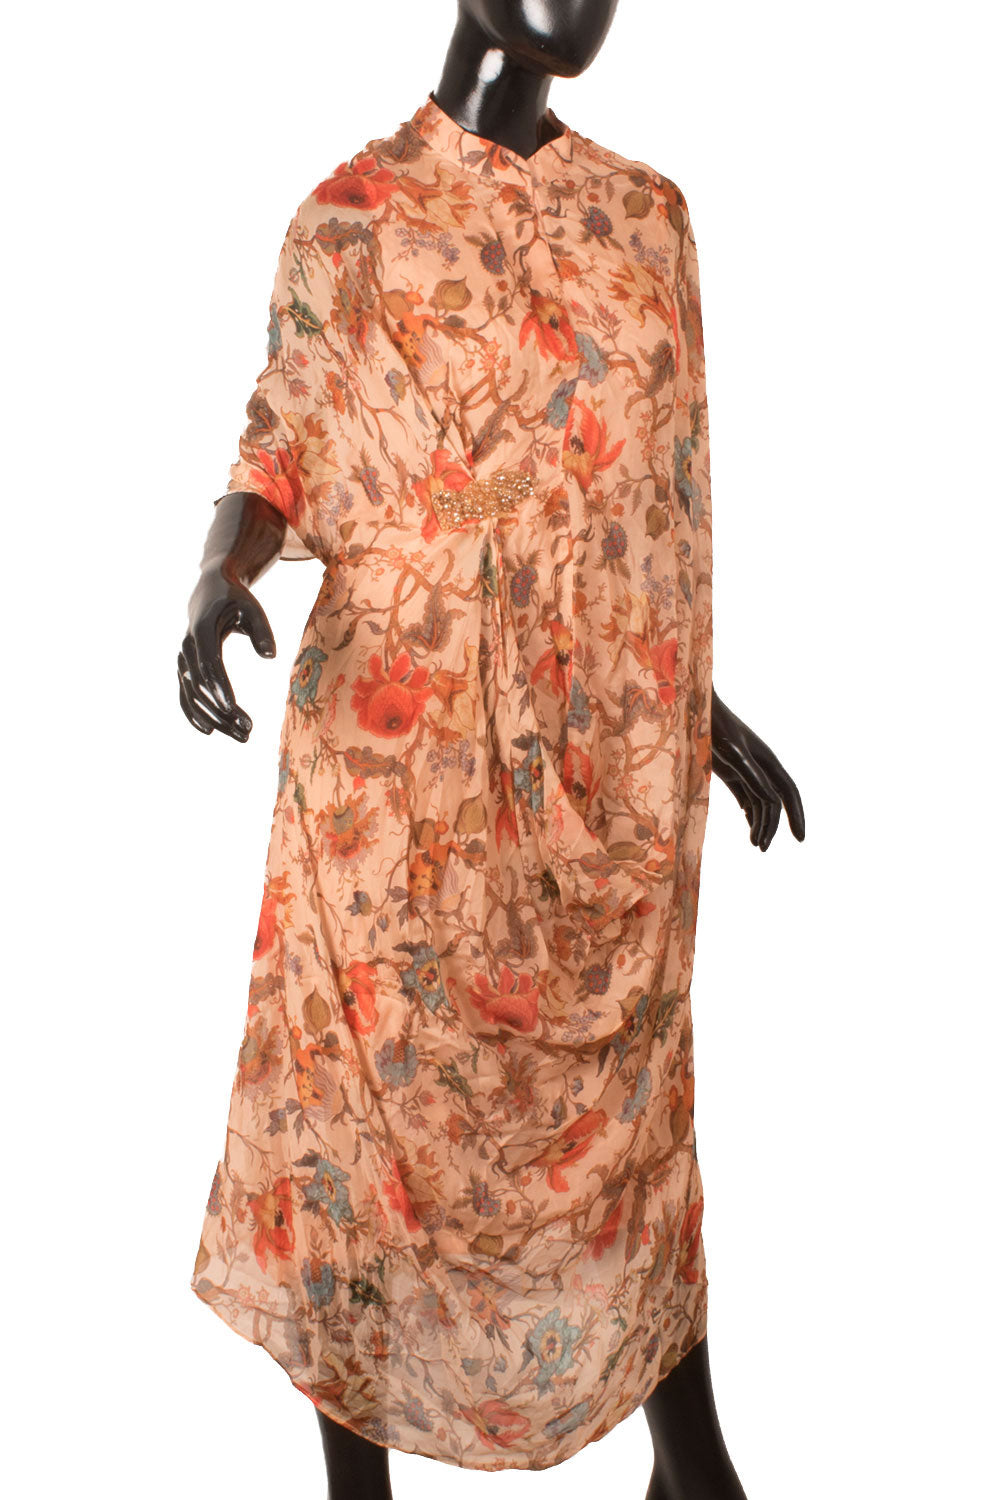 Handcrafted Asymmetrical Digital Printed Silk Dress 10058296